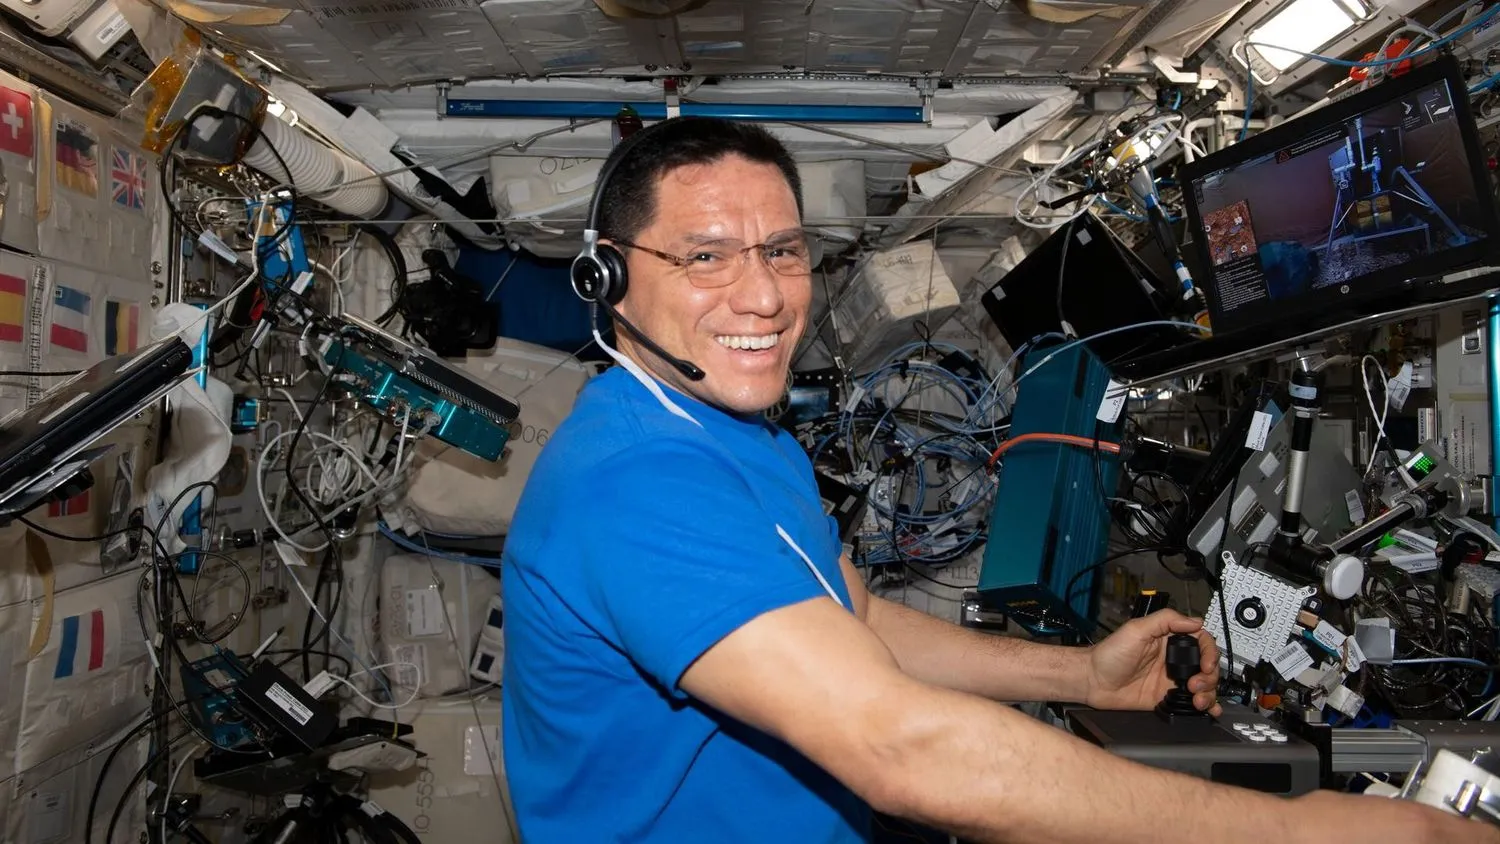 ein Astronaut, der in Spies schwebt, lächelt beim Hantieren mit Laborgeräten